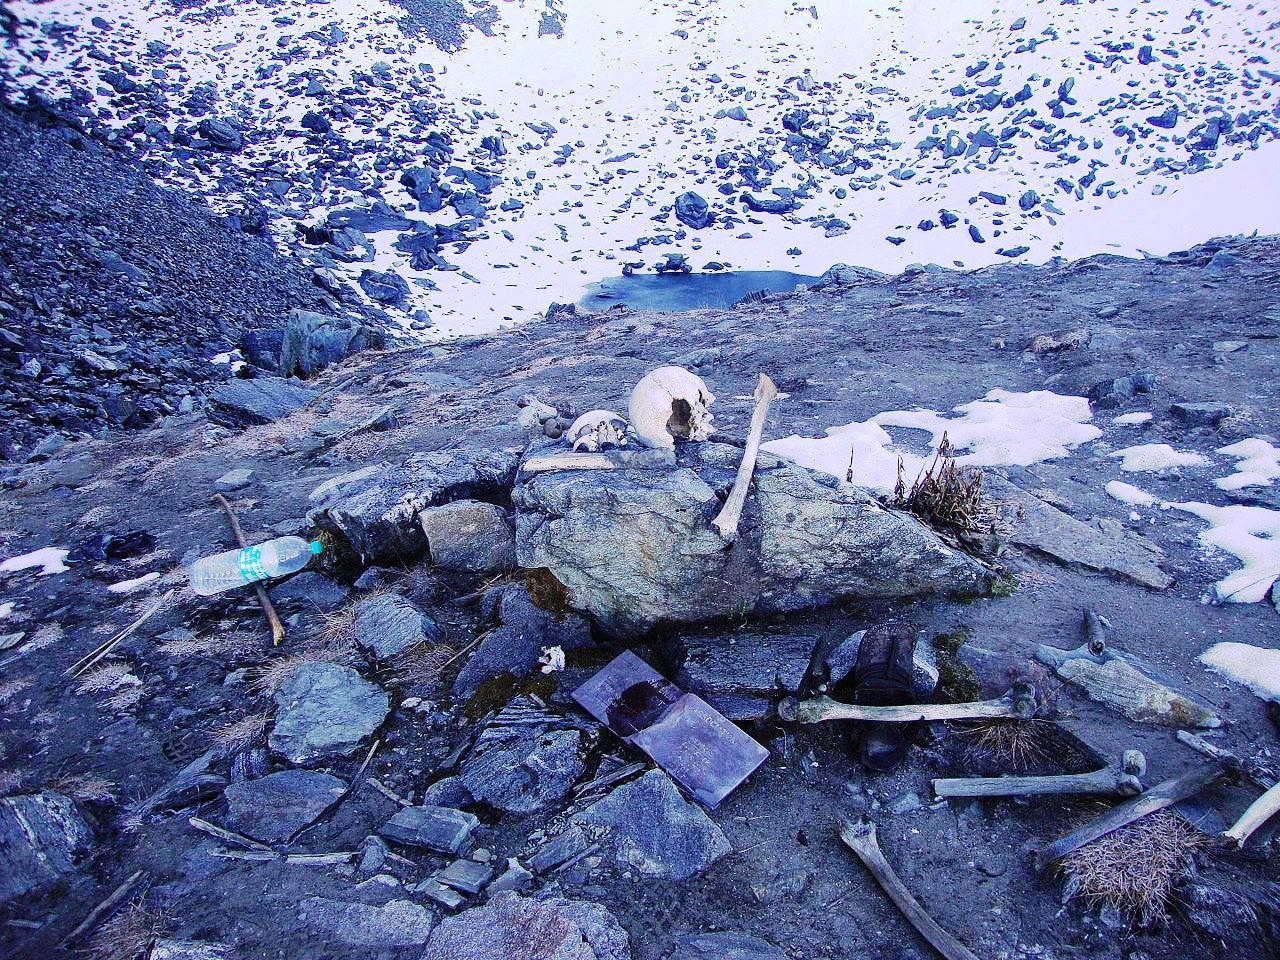 Lago dos esqueletos: As misteriosas ossadas do lago no Himalaia